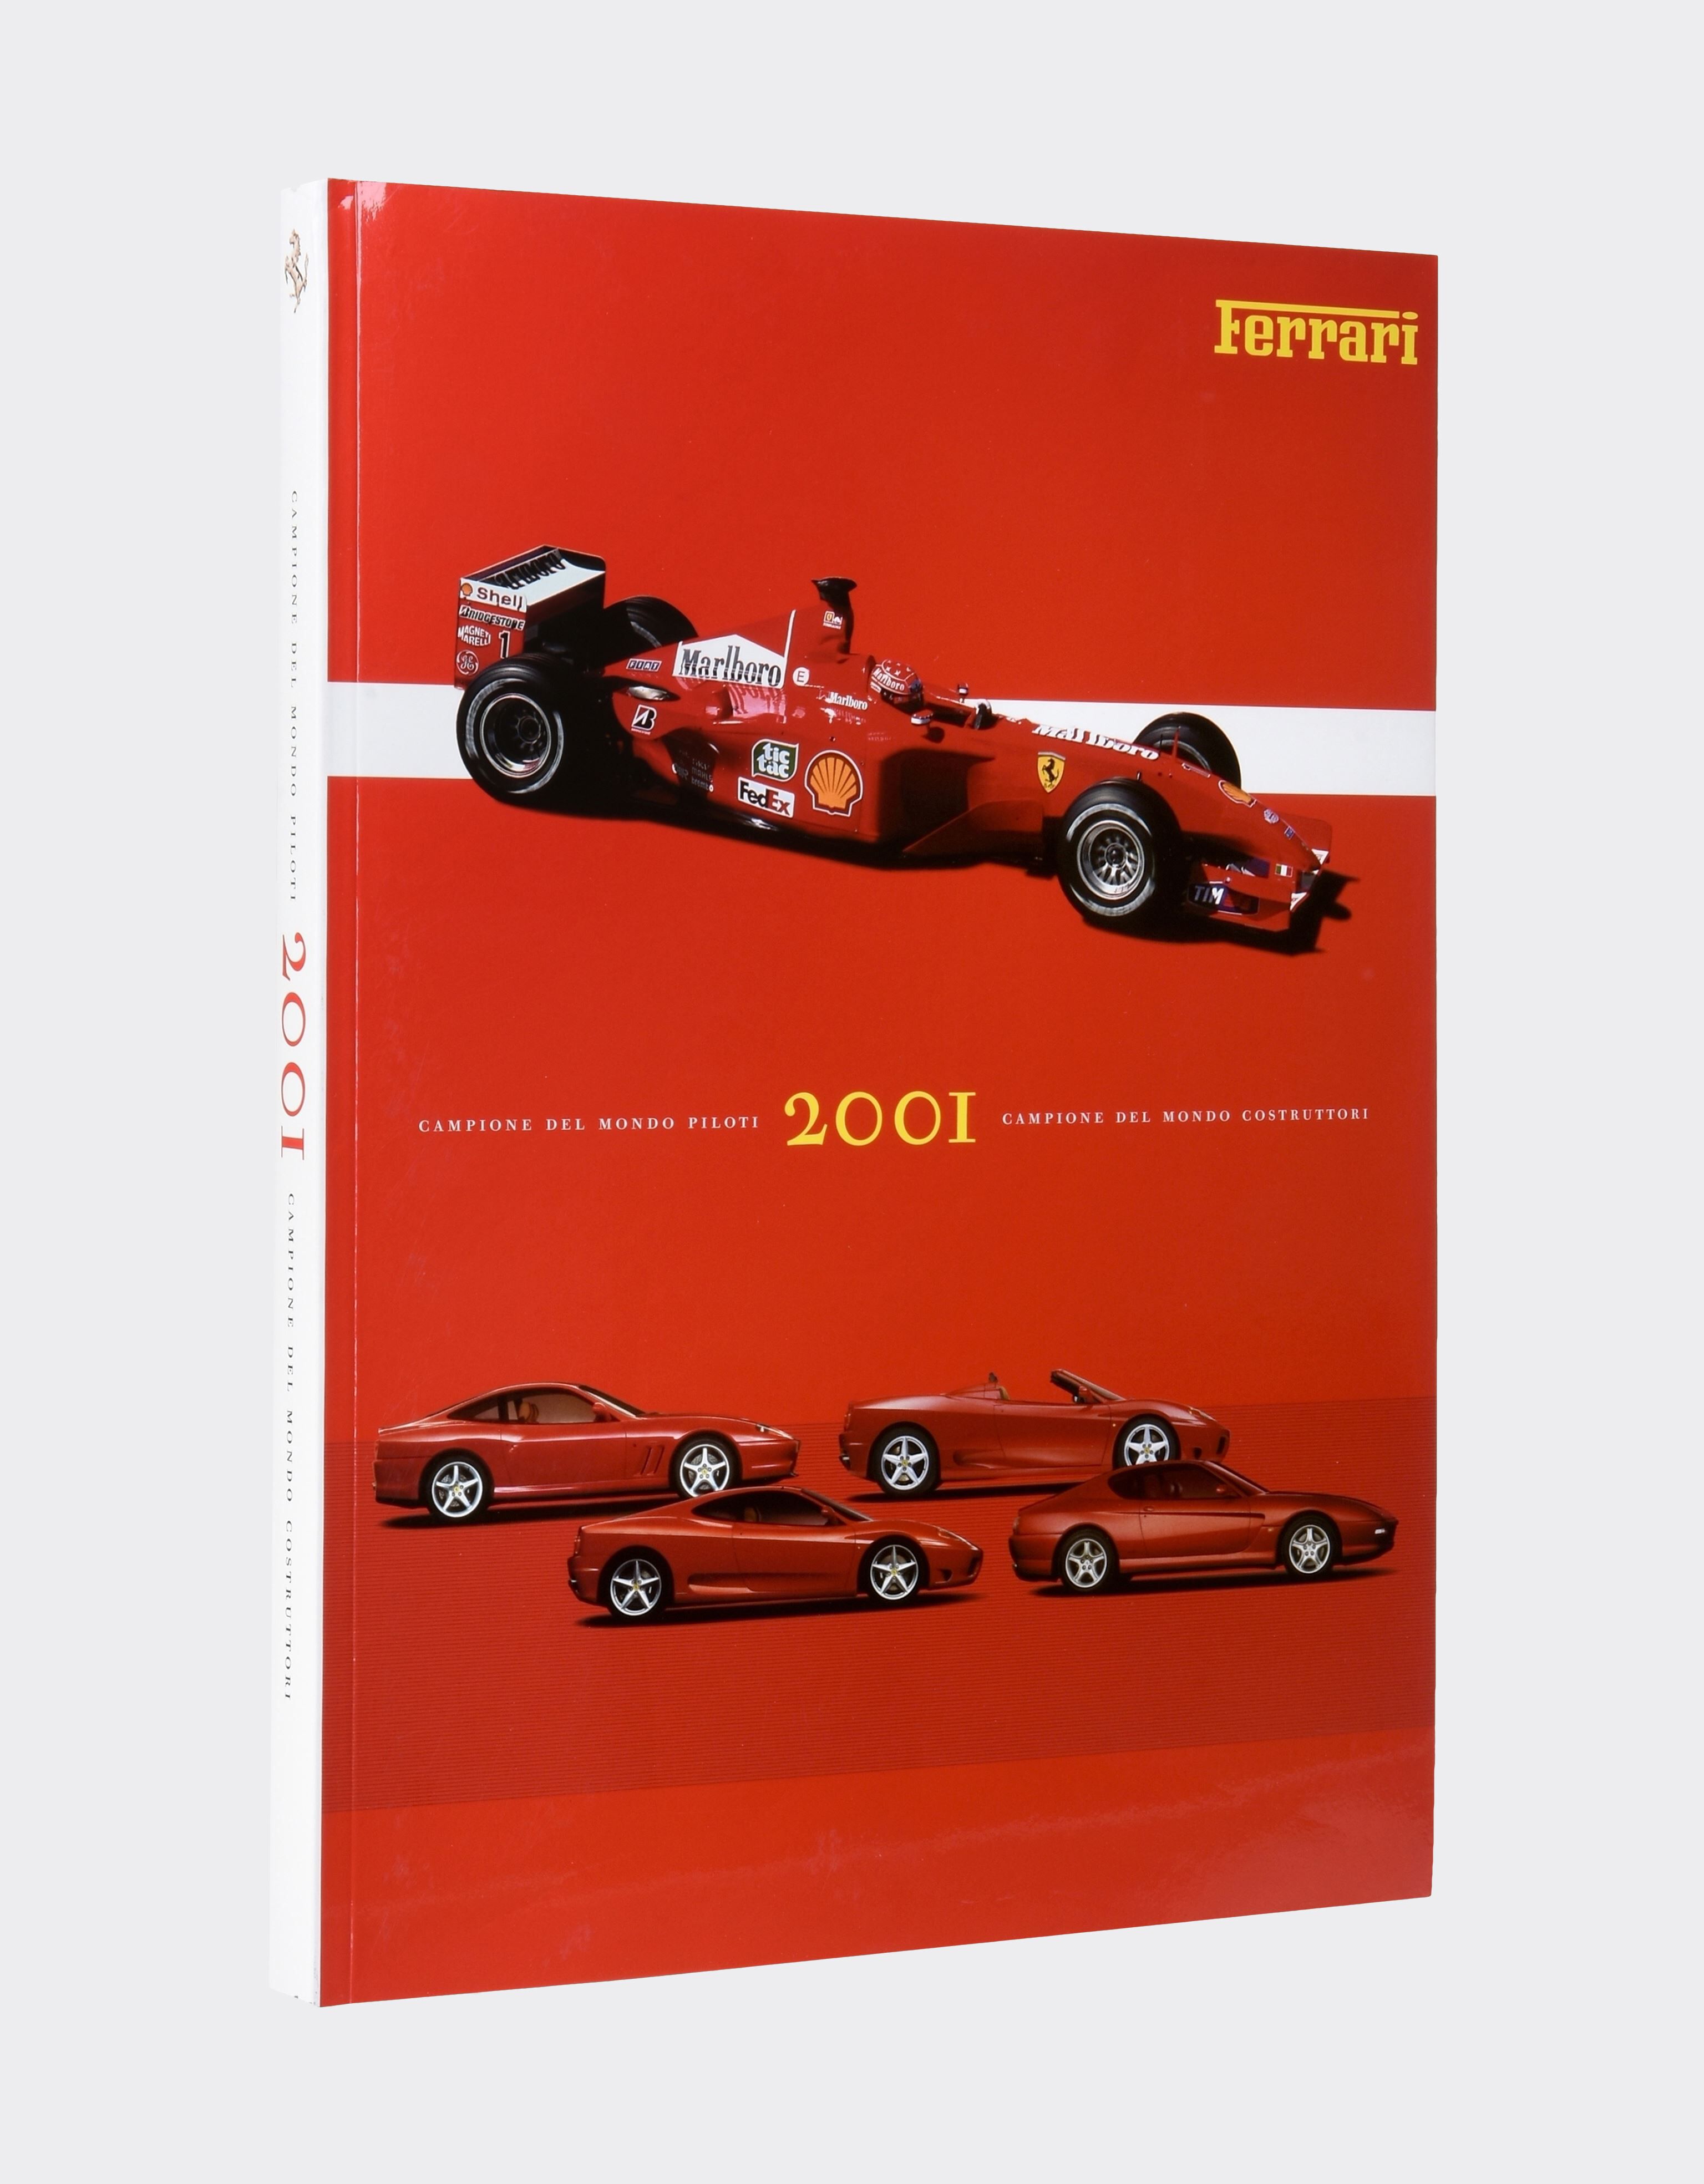 Ferrari Anuario Ferrari 2001 MULTICOLOR 00619f